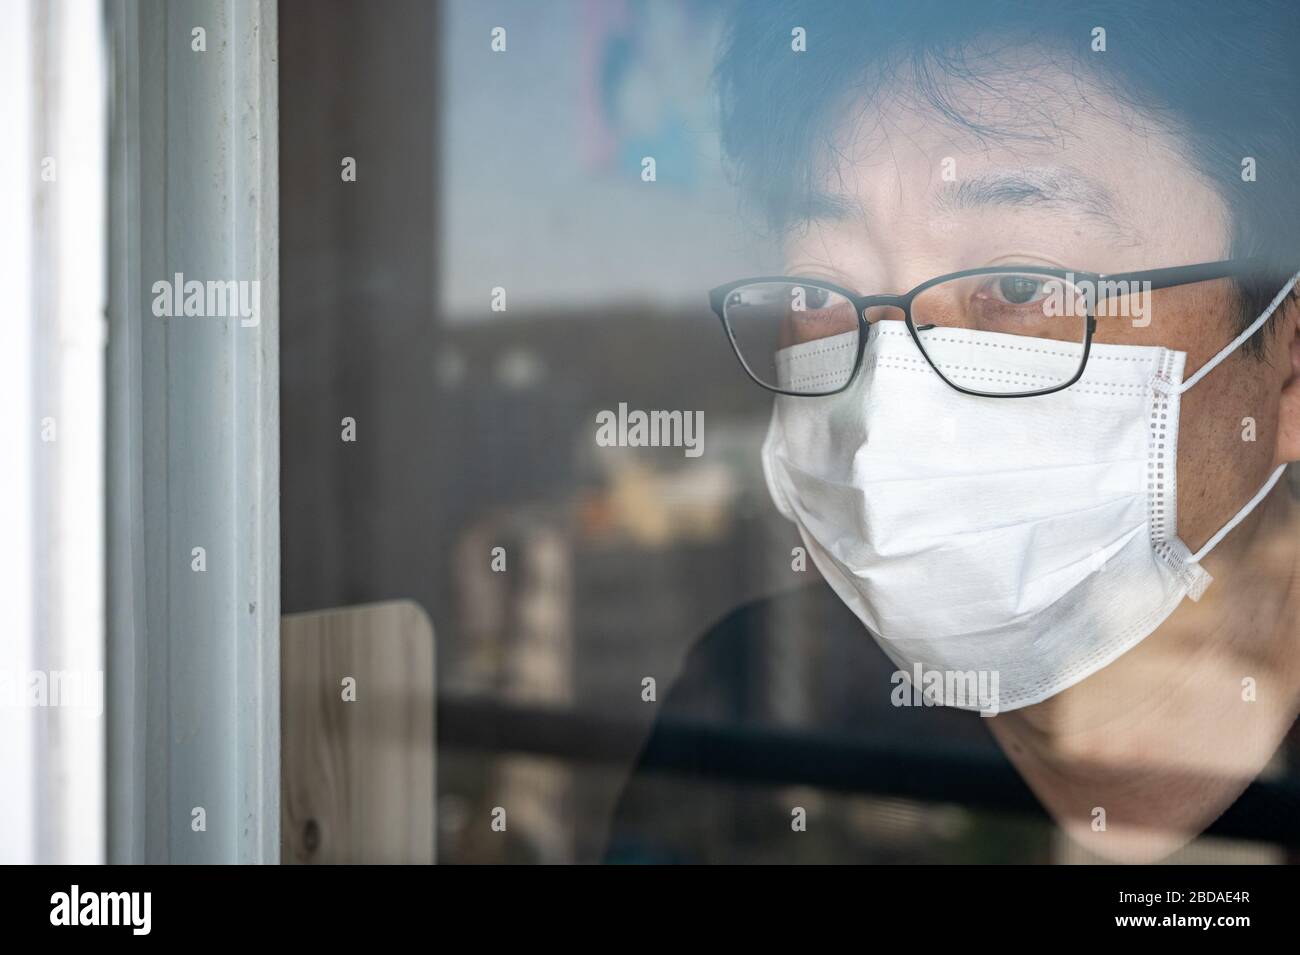 Concepto de autoaislamiento del coronavirus COVID-19. Un hombre asiático con una máscara facial y una ventana mirando por la ventana durante su auto-aislamiento en casa. Foto de stock